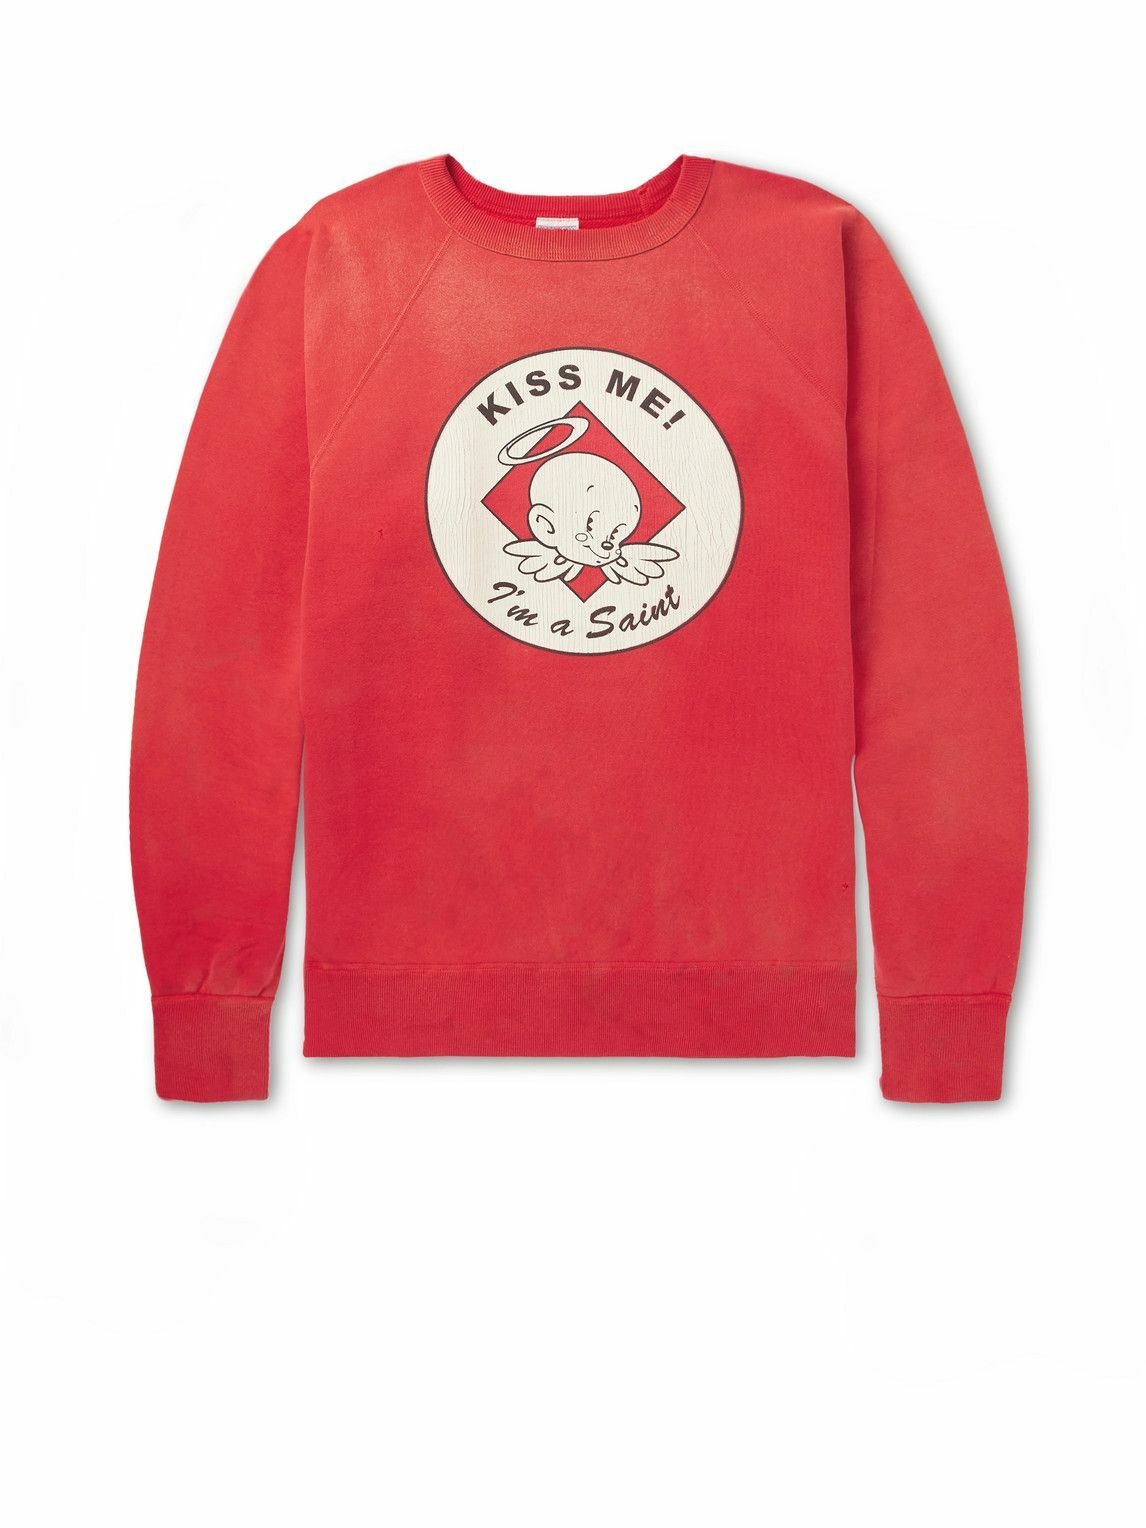 Photo: SAINT Mxxxxxx - Distressed Printed Cotton-Jersey Sweatshirt - Red